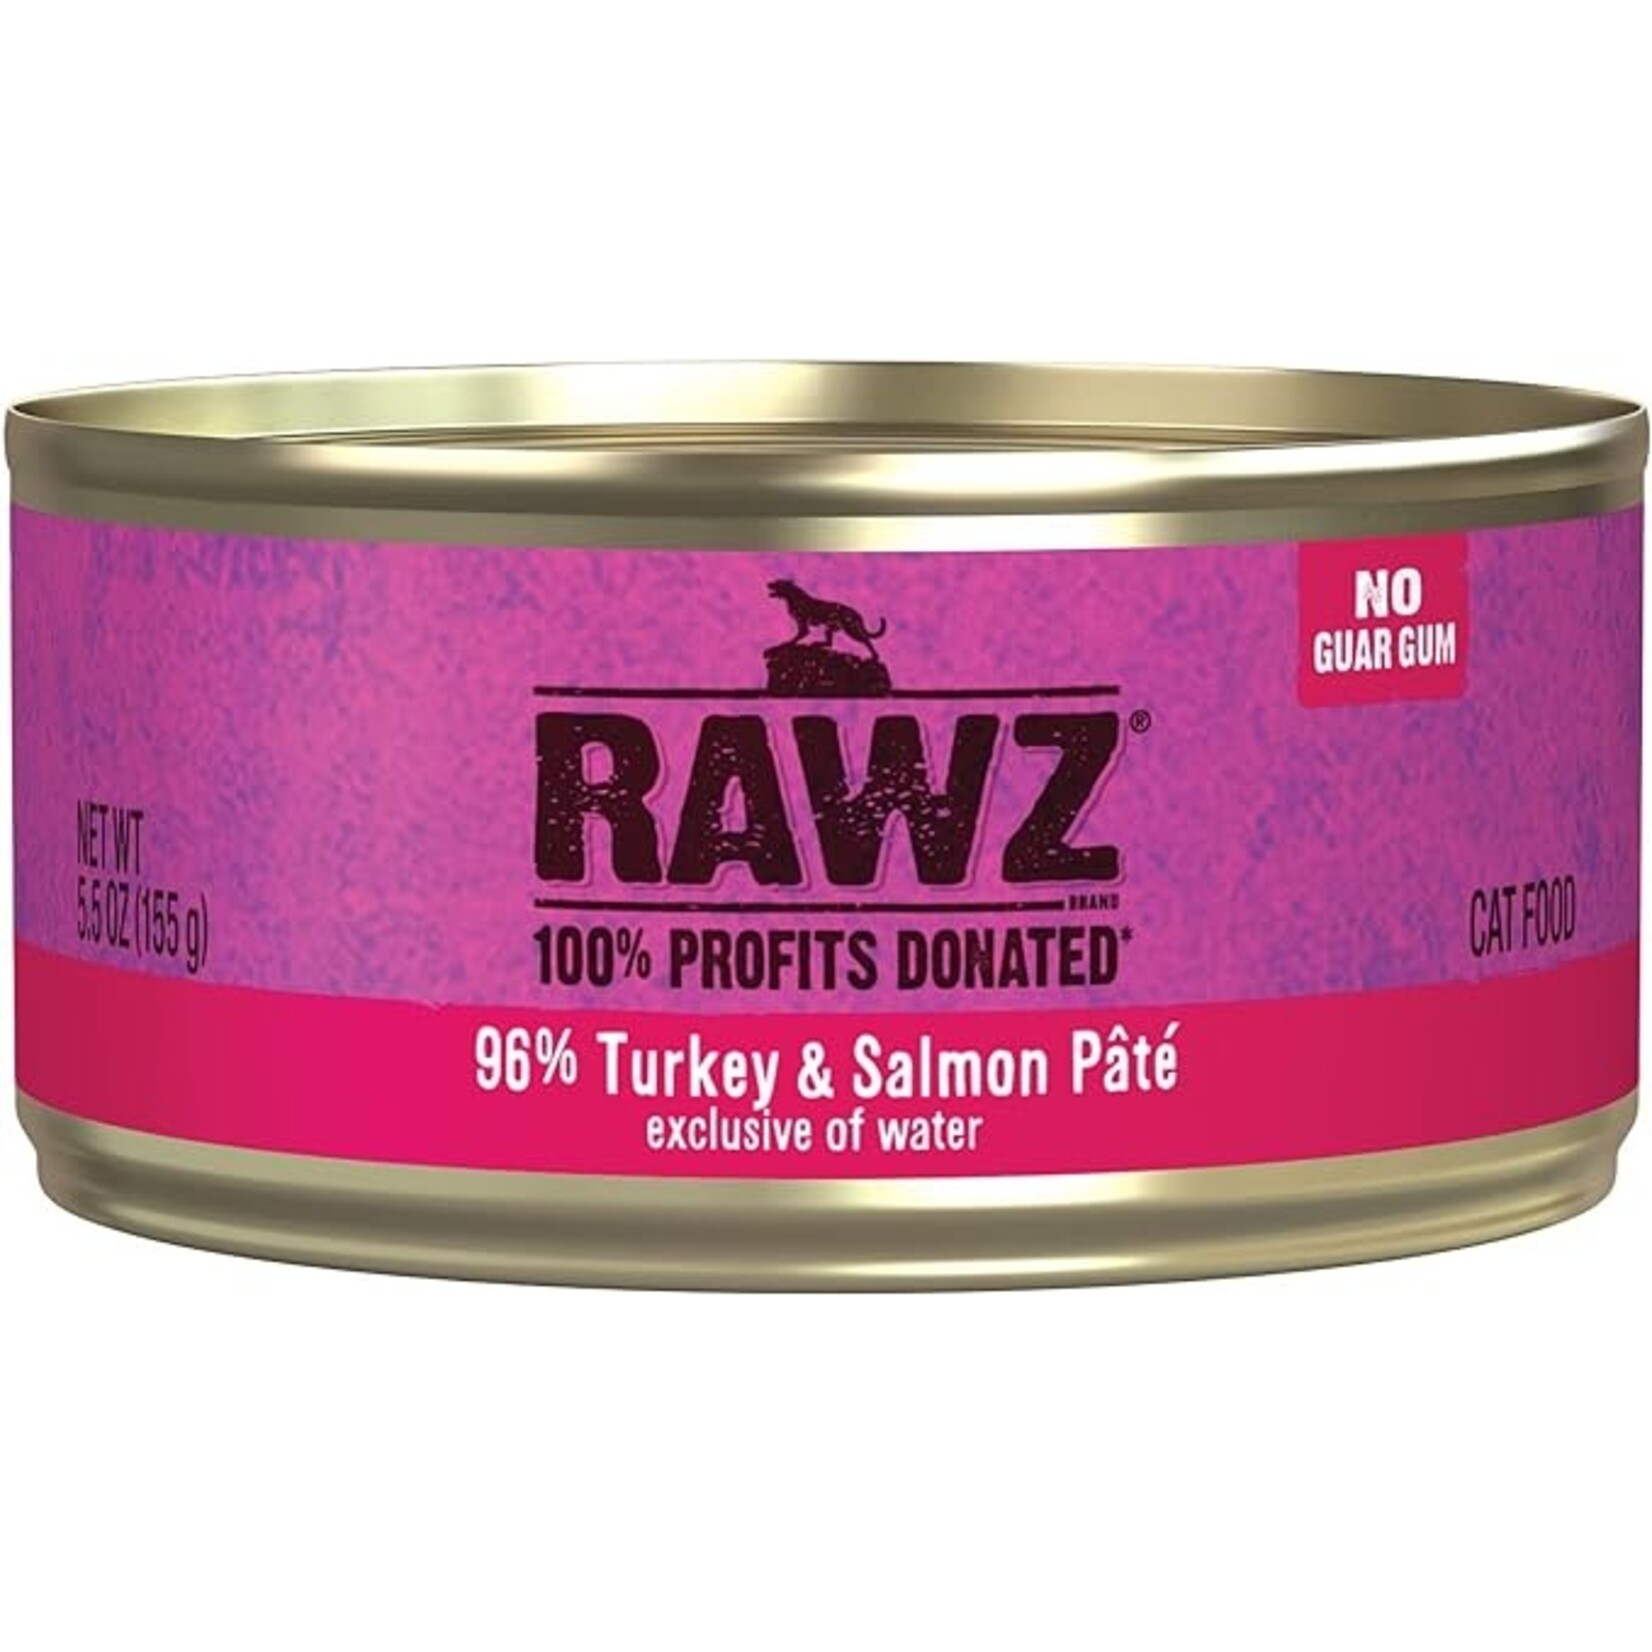 Rawz Rawz Turkey & Salmon 96% 5.5oz